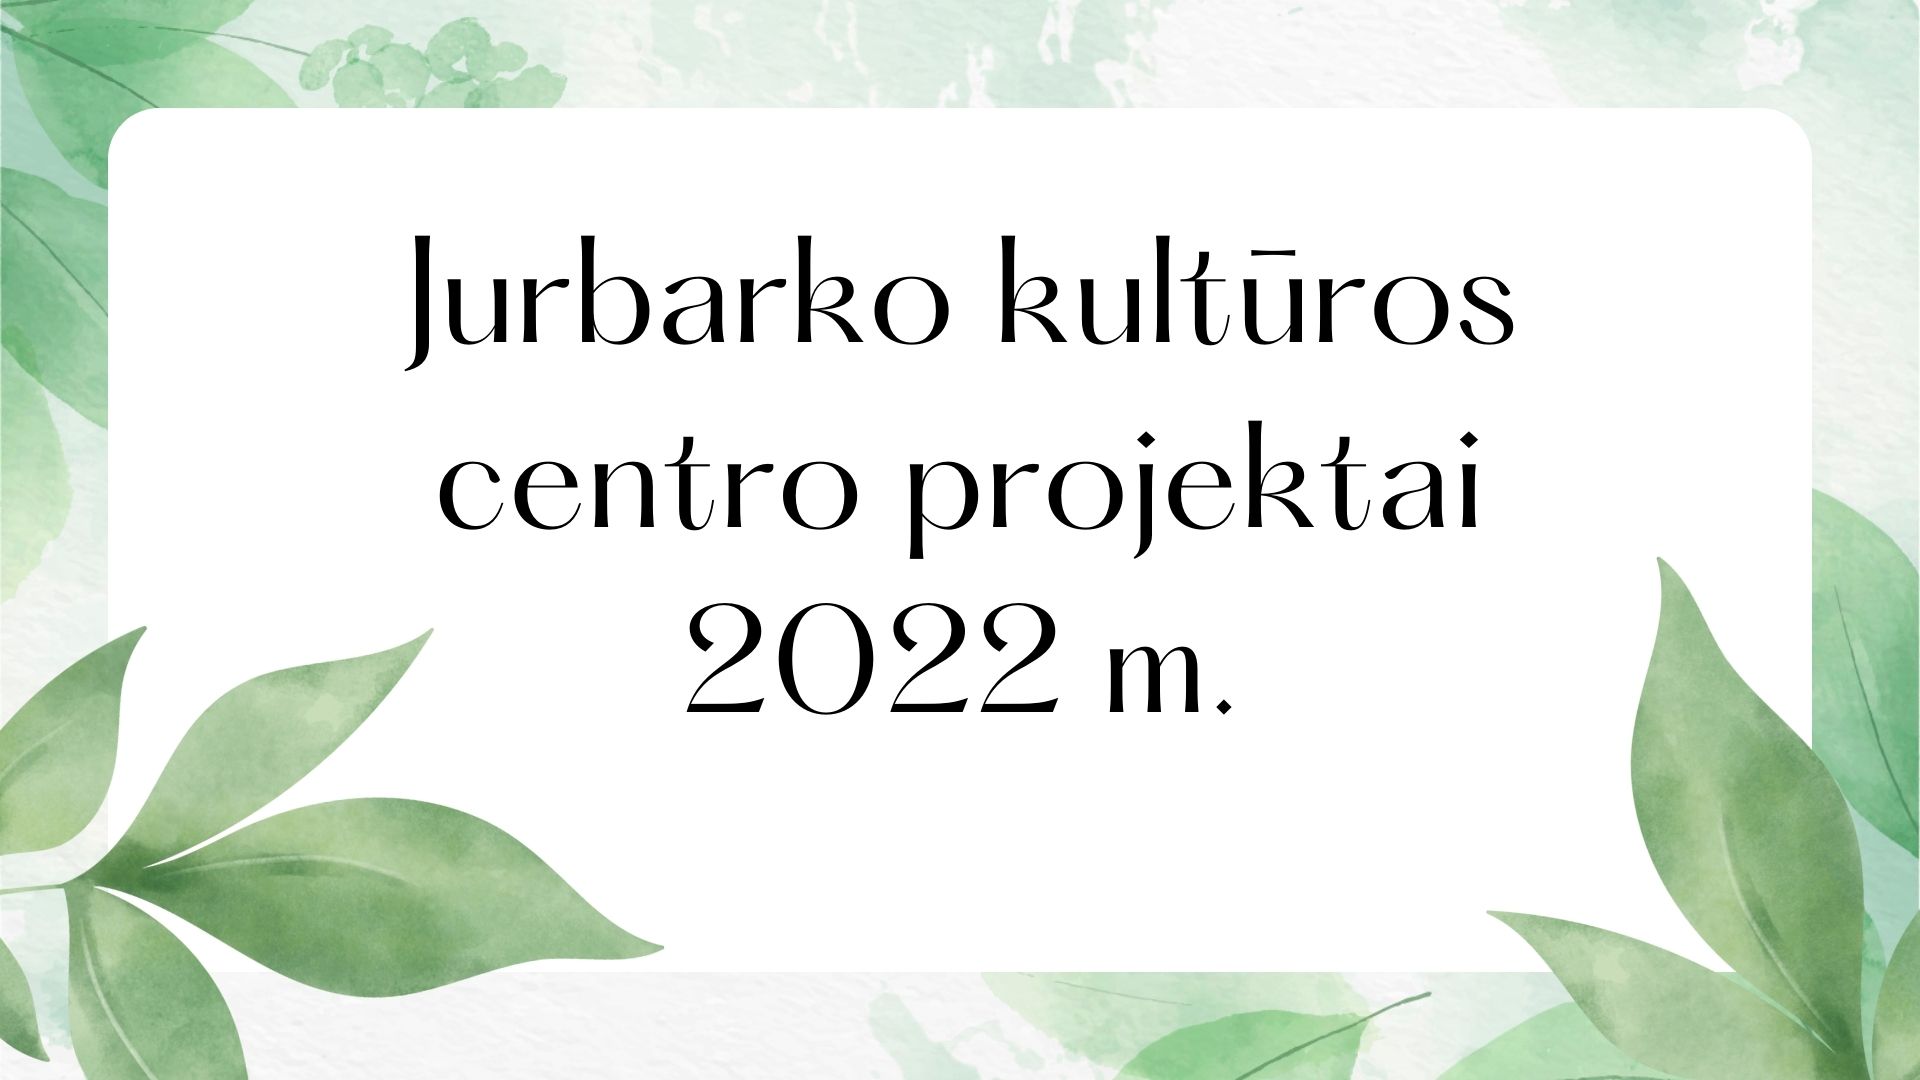 Jurbarko kultūros centro 2022 metais įgyvendintų projektų ryškiausios akimirkos